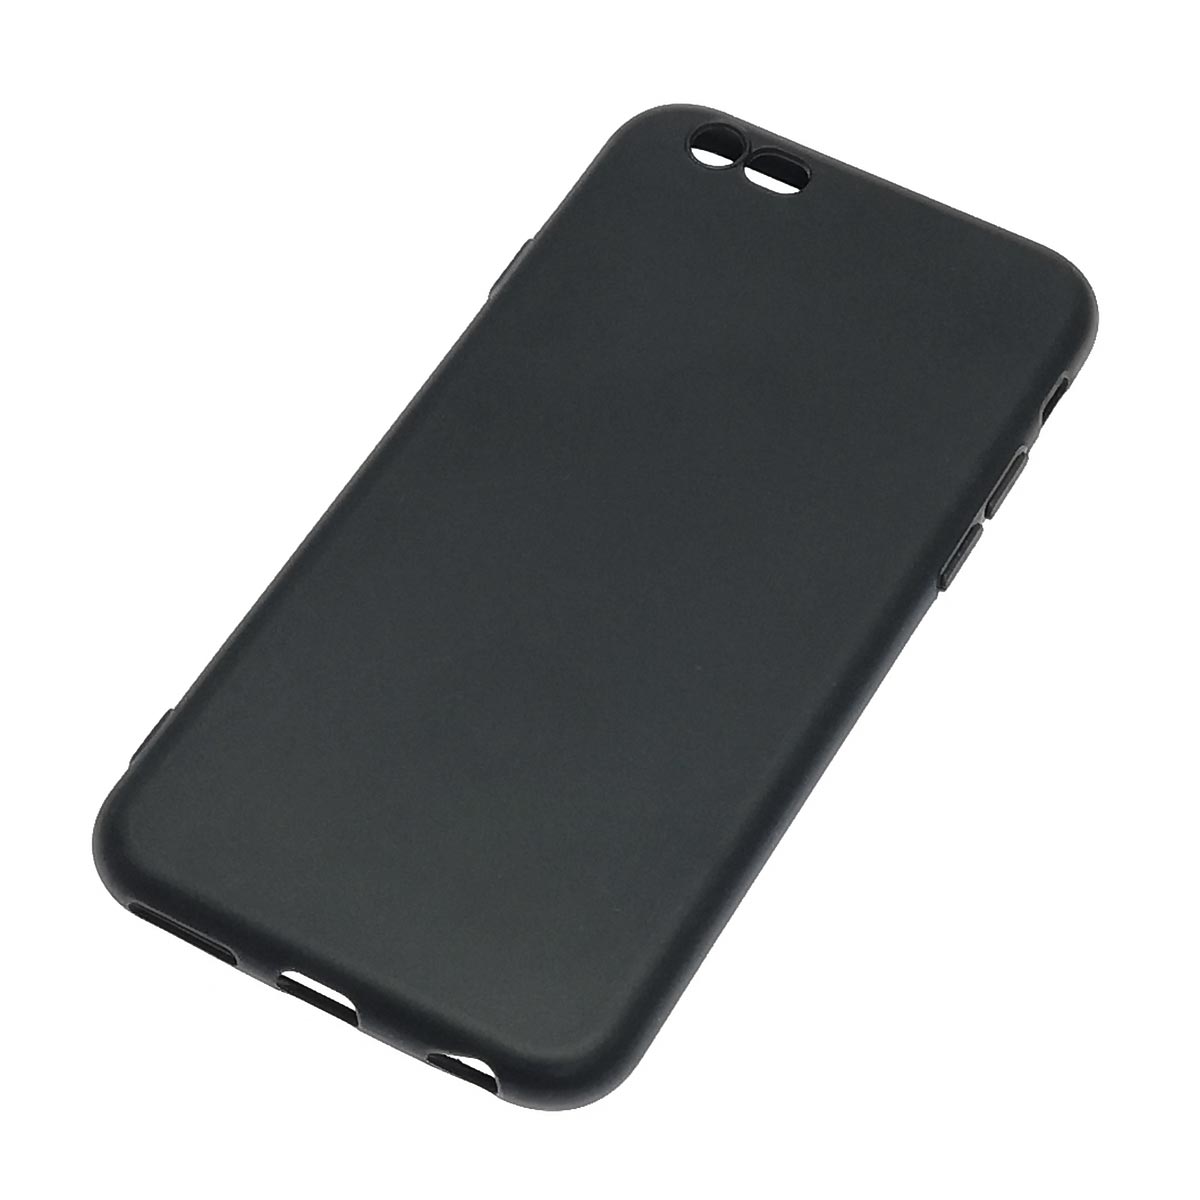 Чехол накладка для APPLE iPhone 6, iPhone 6G, iPhone 6S, силикон, цвет черный